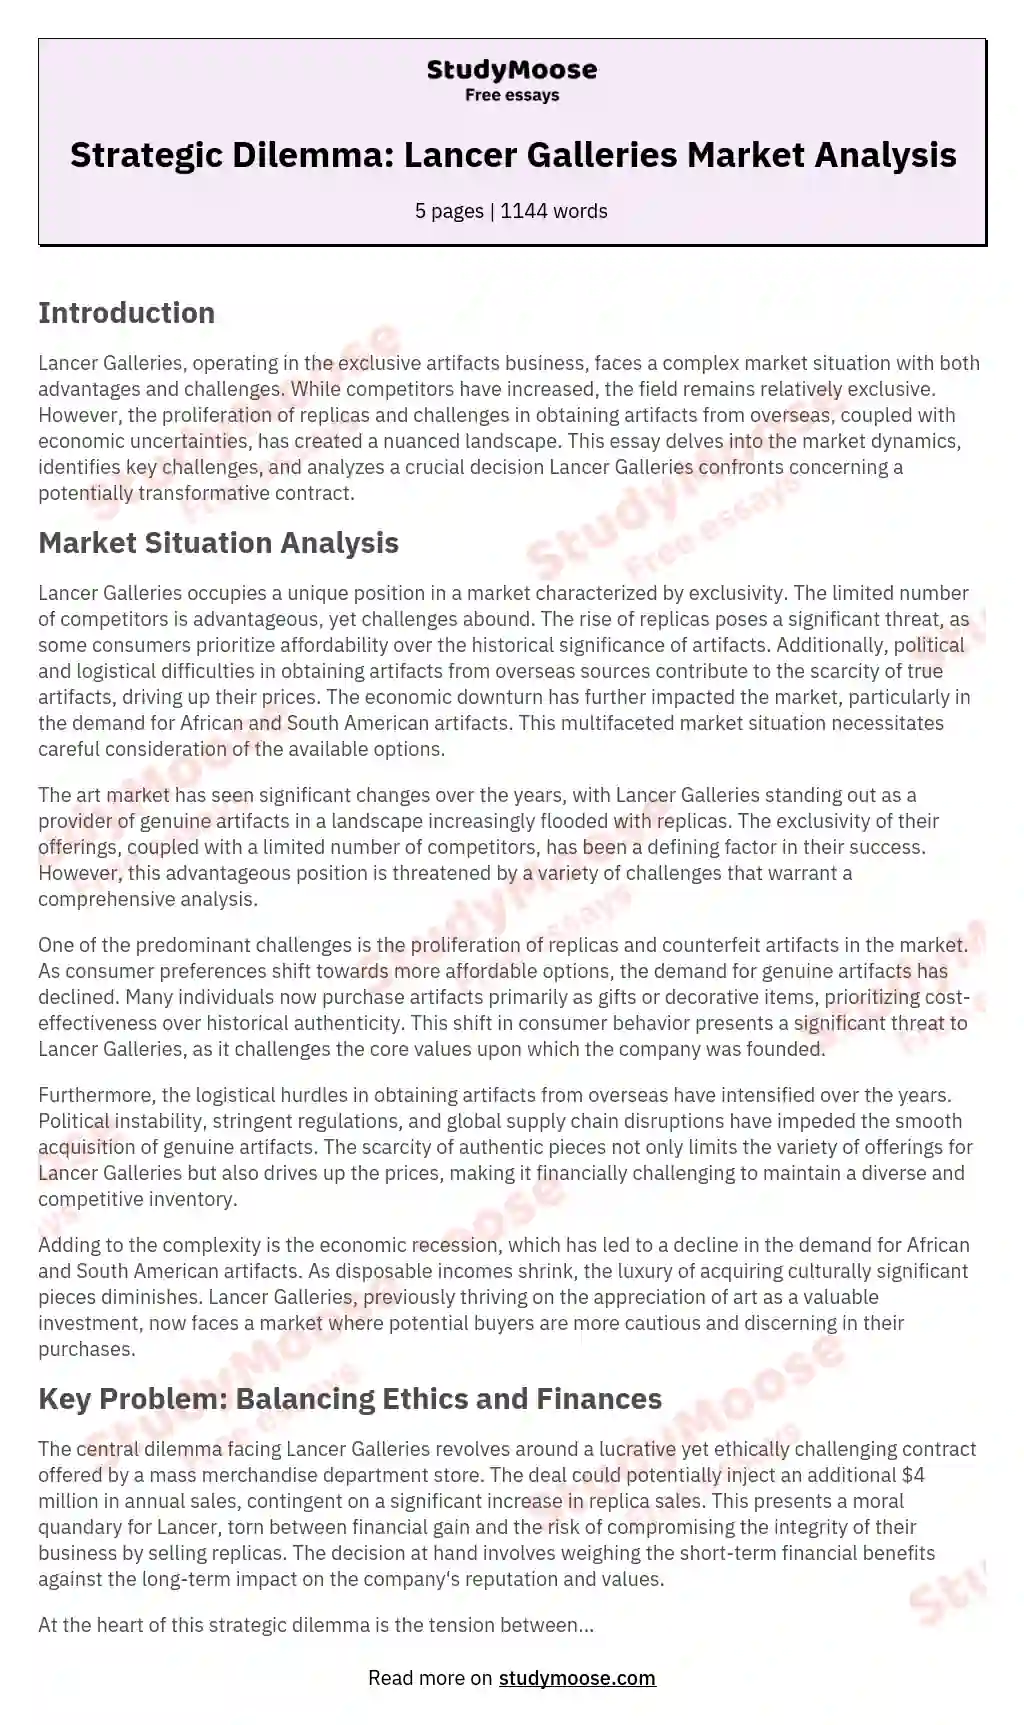 Strategic Dilemma: Lancer Galleries Market Analysis essay